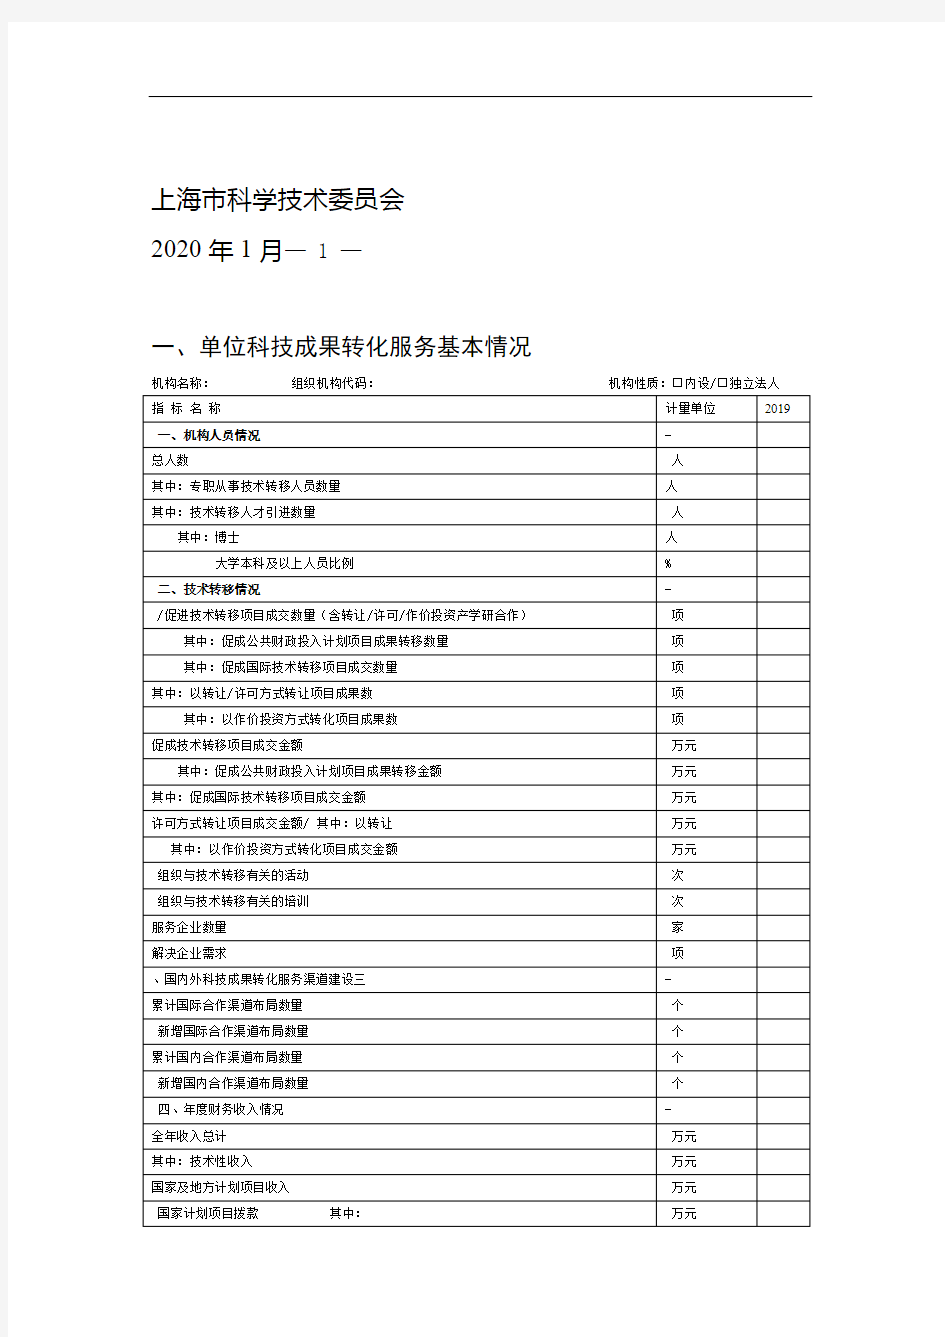 上海市科技成果转化服务机构年度报告